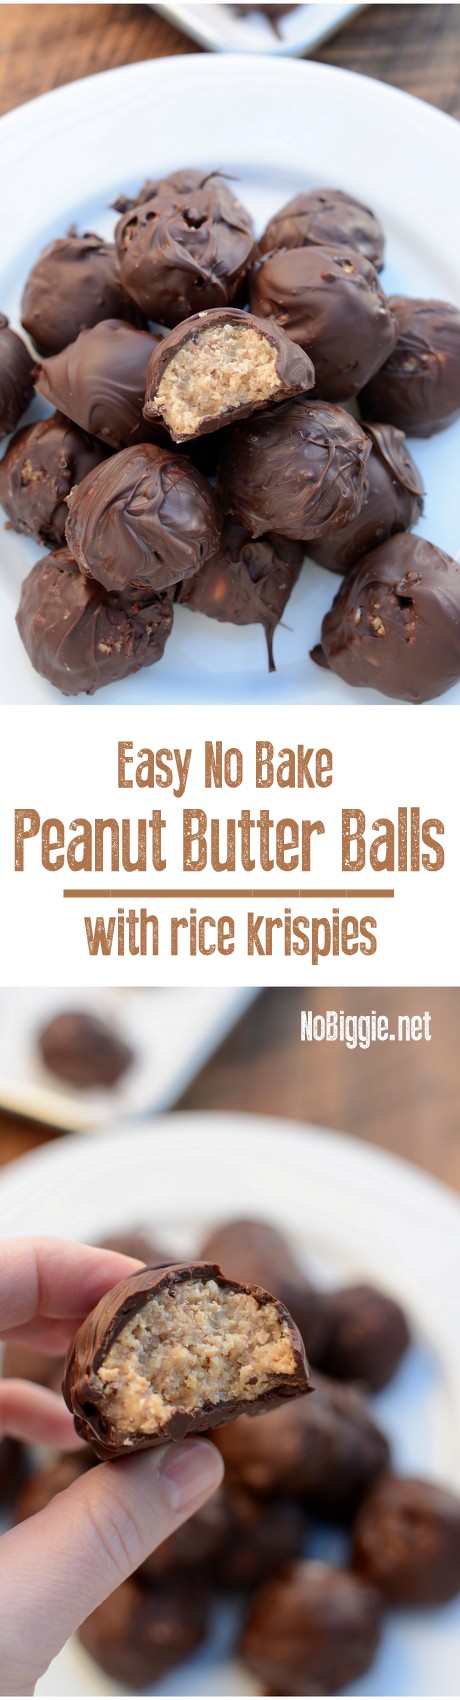 http://www.nobiggie.net/wp-content/uploads/2016/07/Easy-No-Bake-Peanut-Butter-Balls.jpg